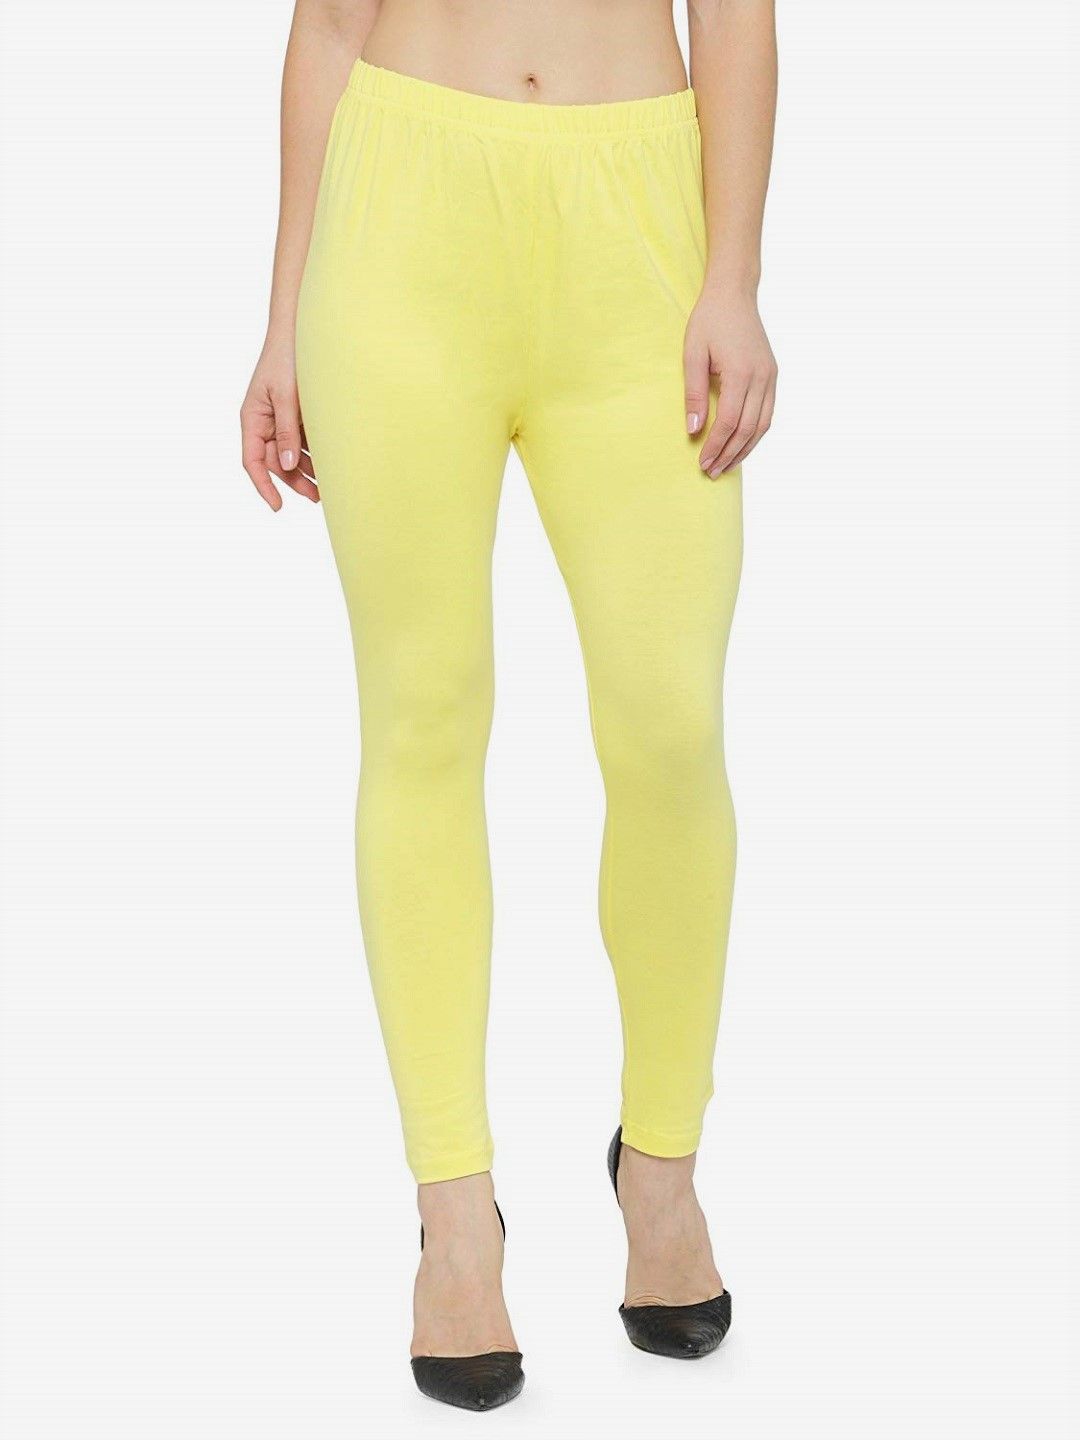 Women's Lemon Yellow Leggings